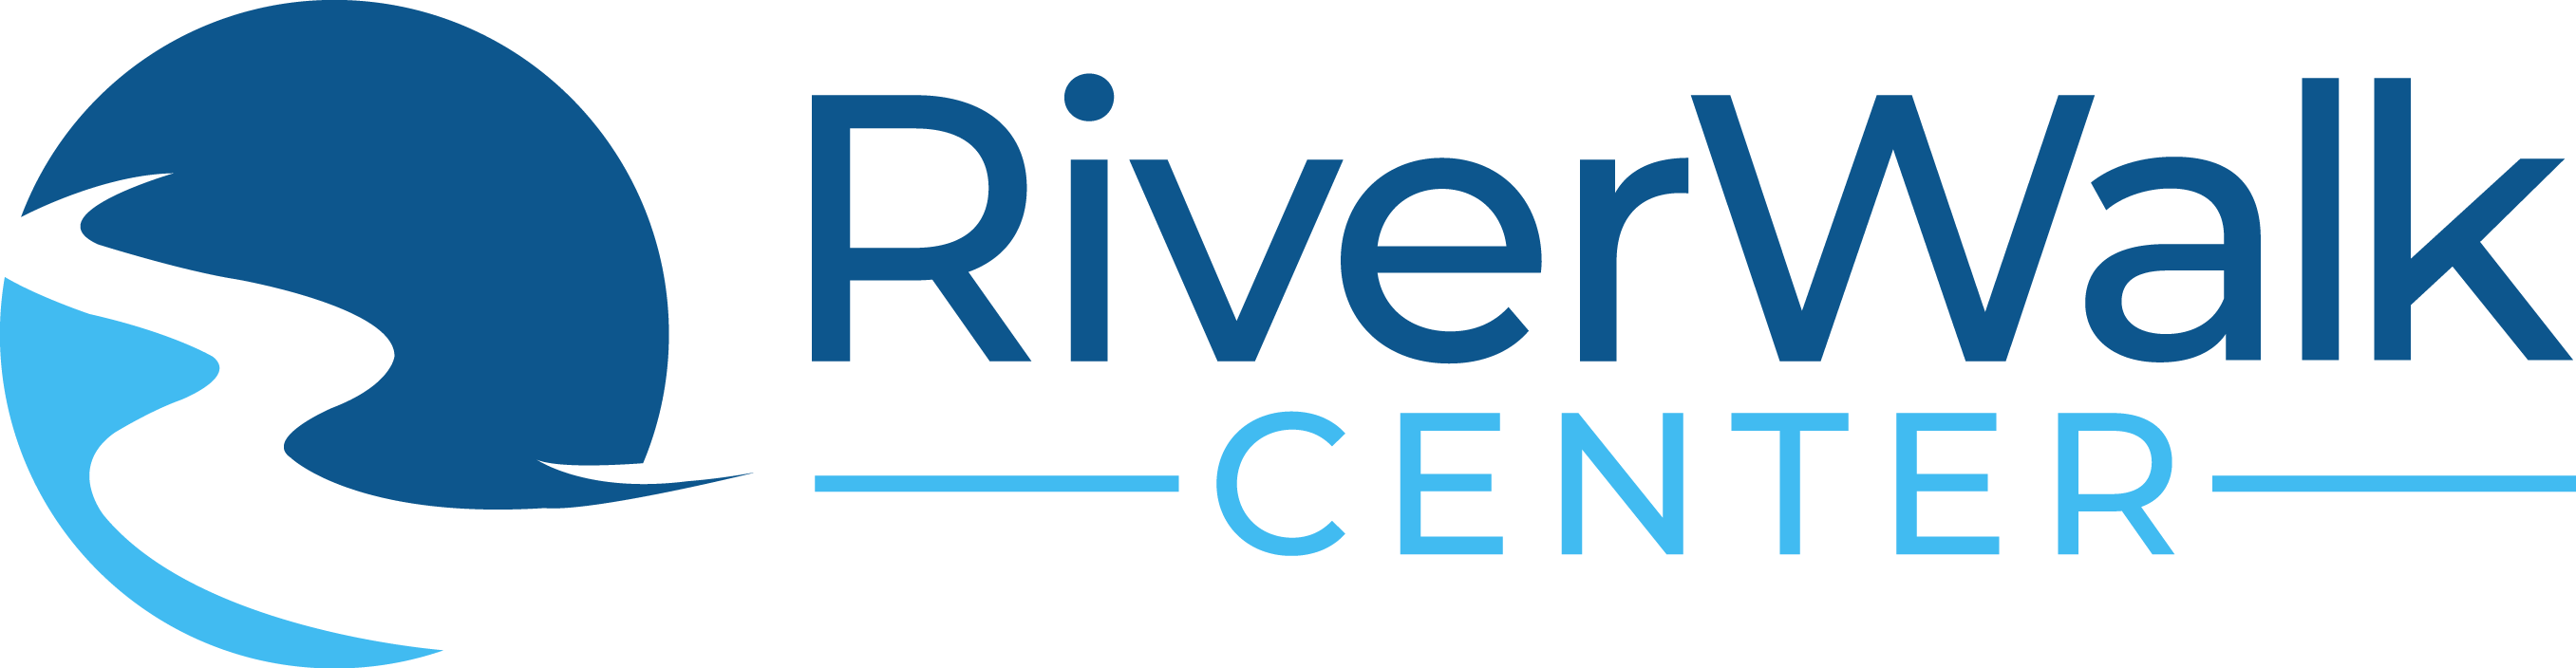 RiverWalkCenter